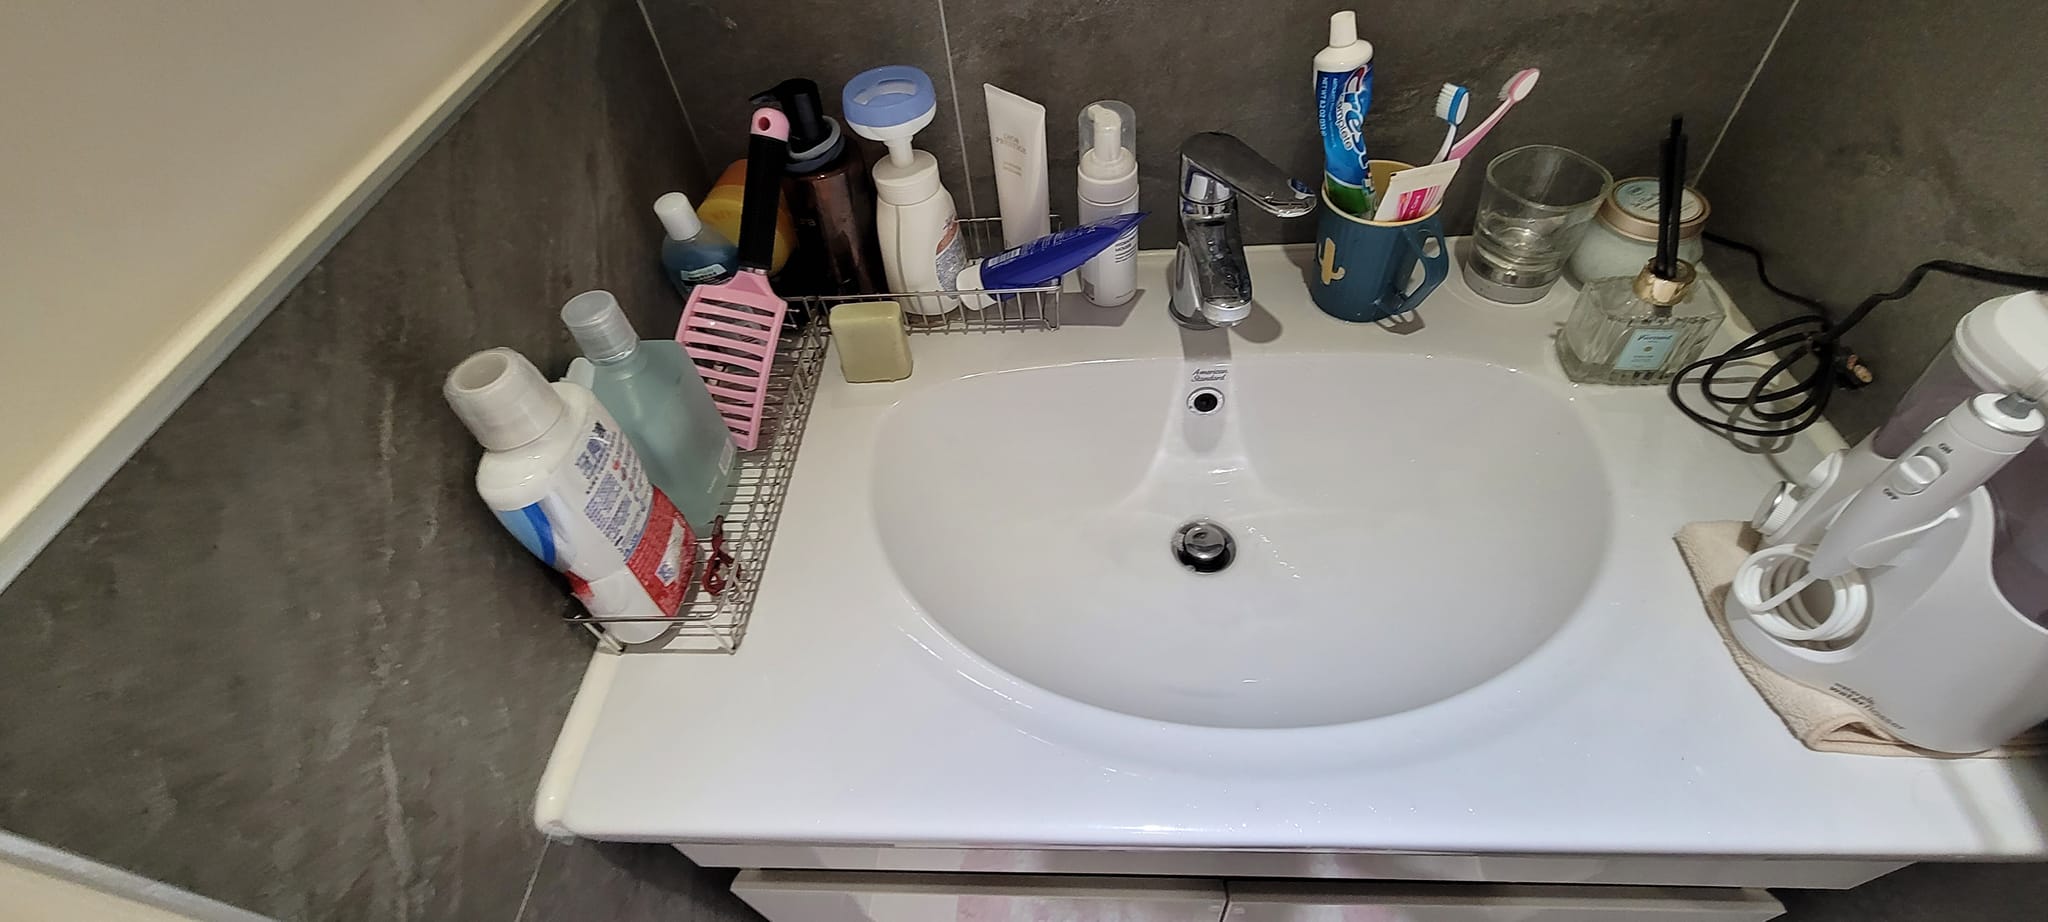 【新竹居家清潔】浴室洗手台清潔